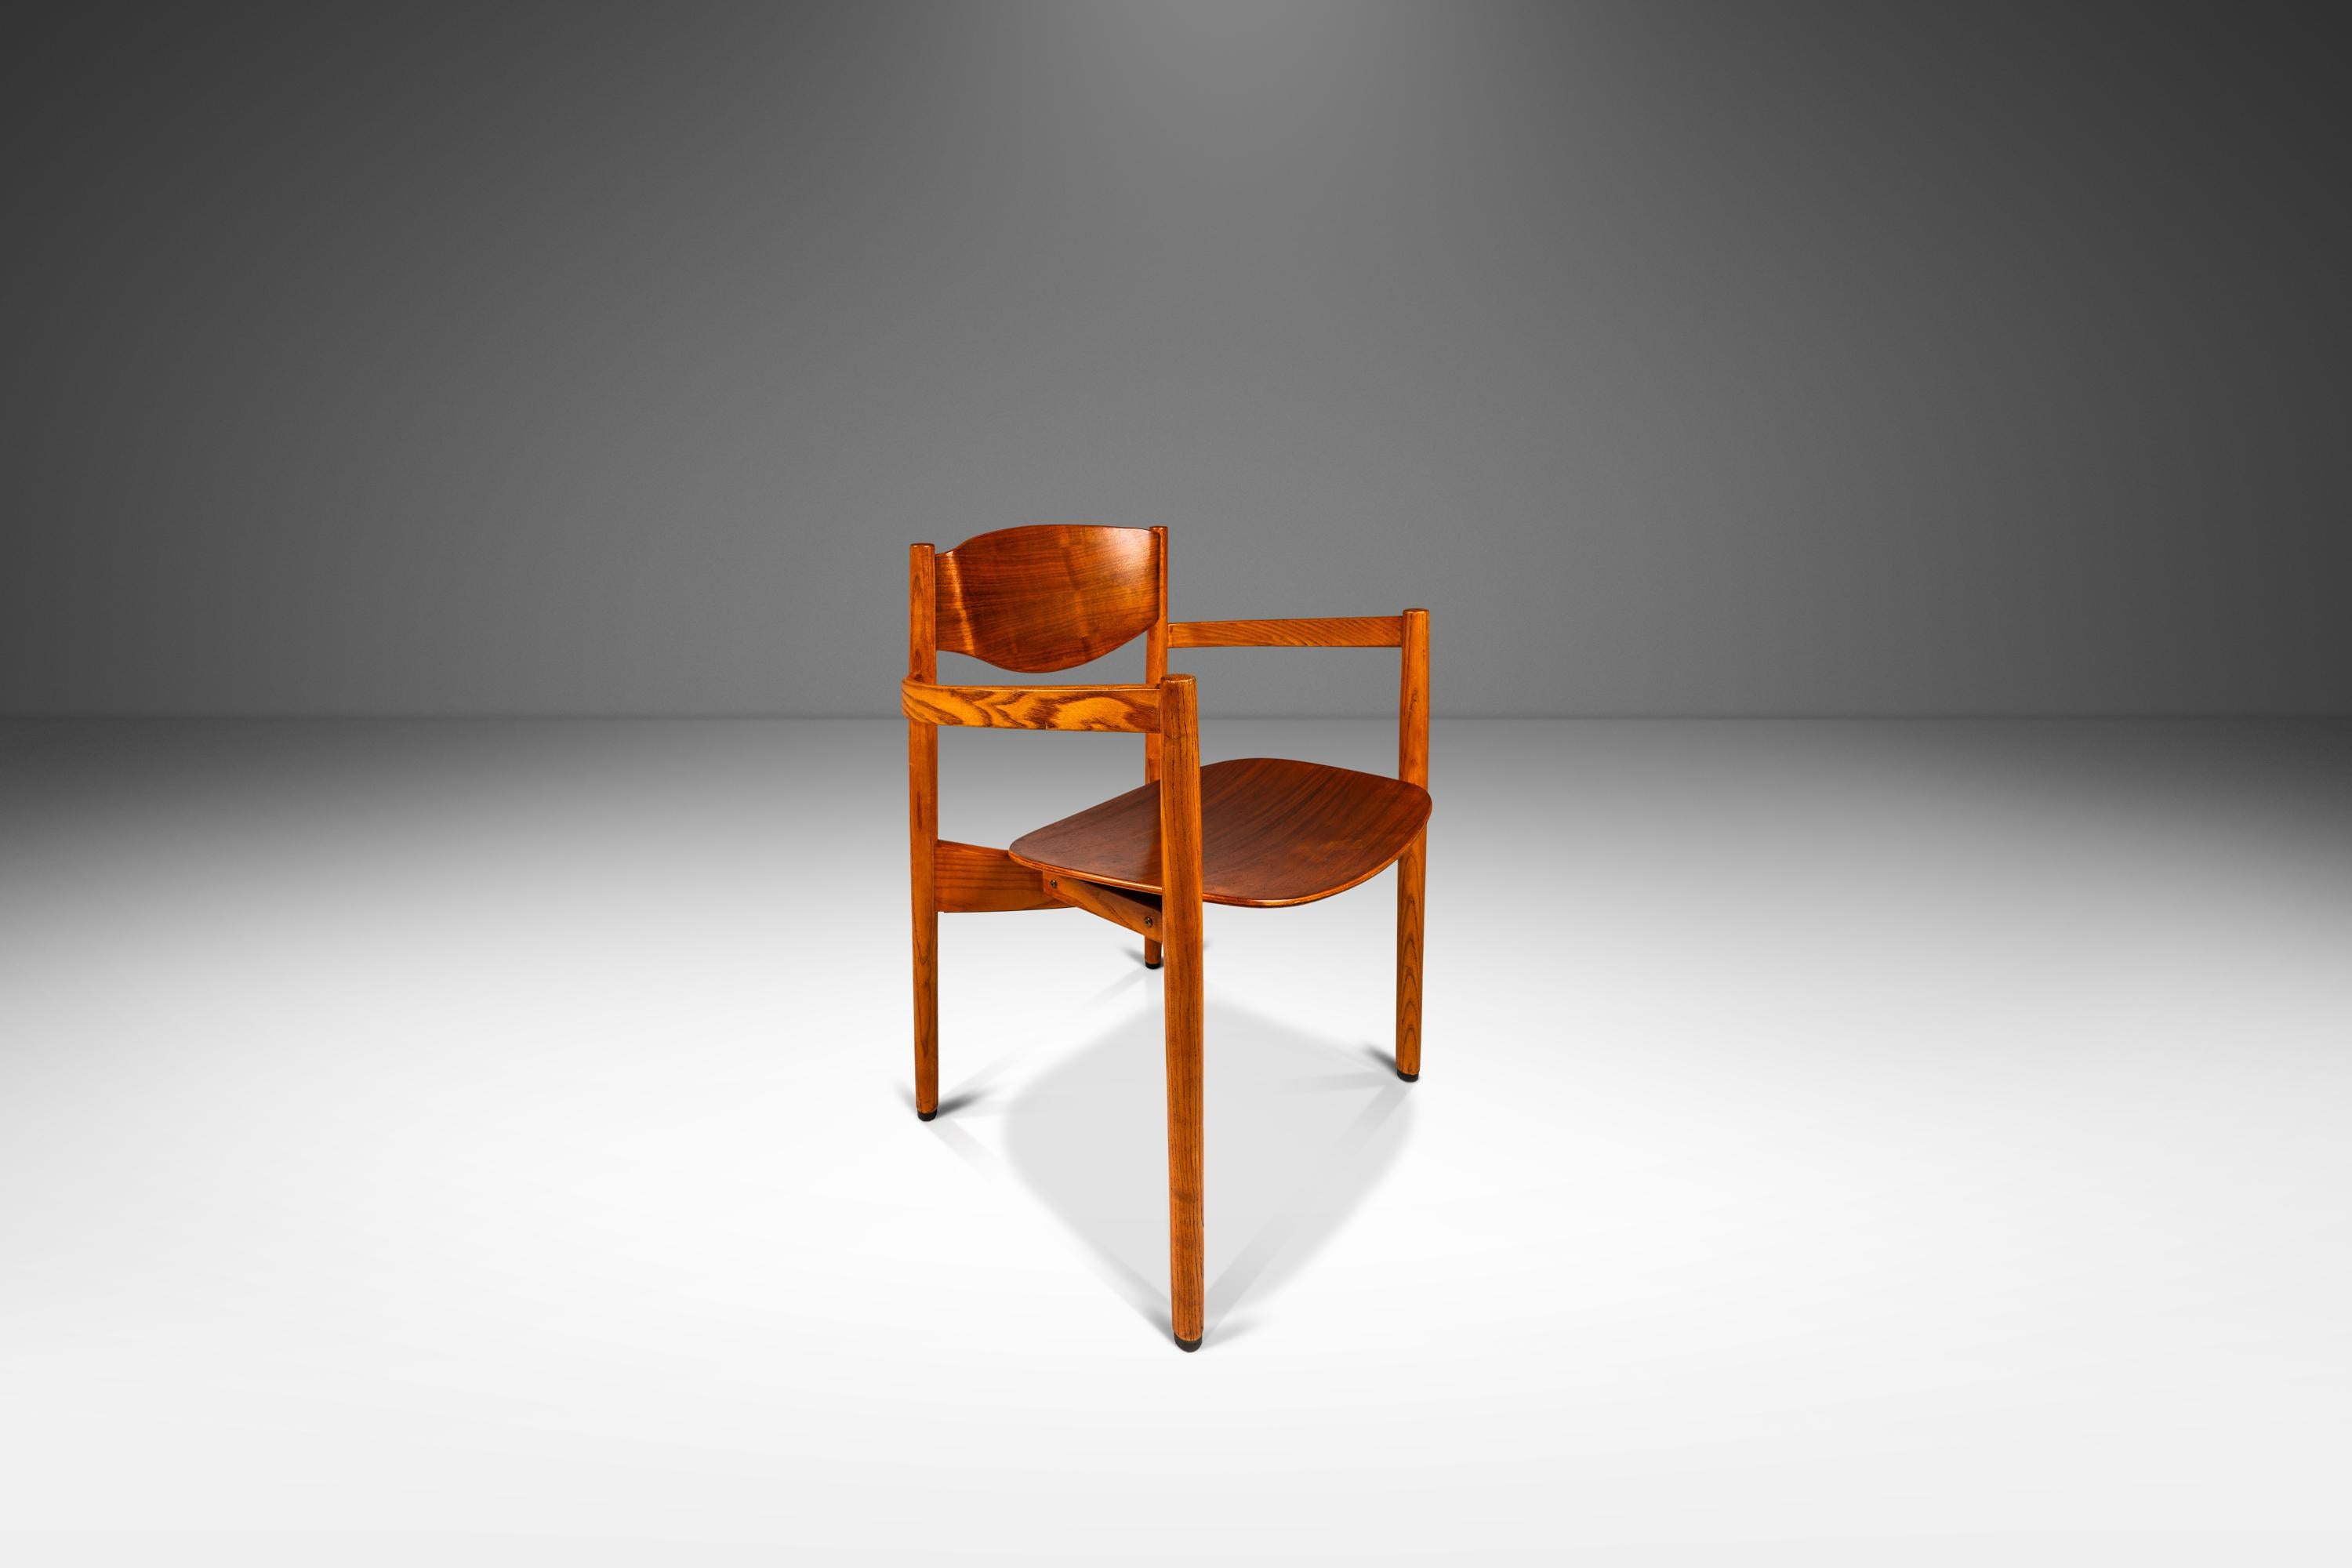 Single Mid-Century Modern Chair in Oak & Walnut  by Jens Risom, USA, c. 1960s For Sale 1